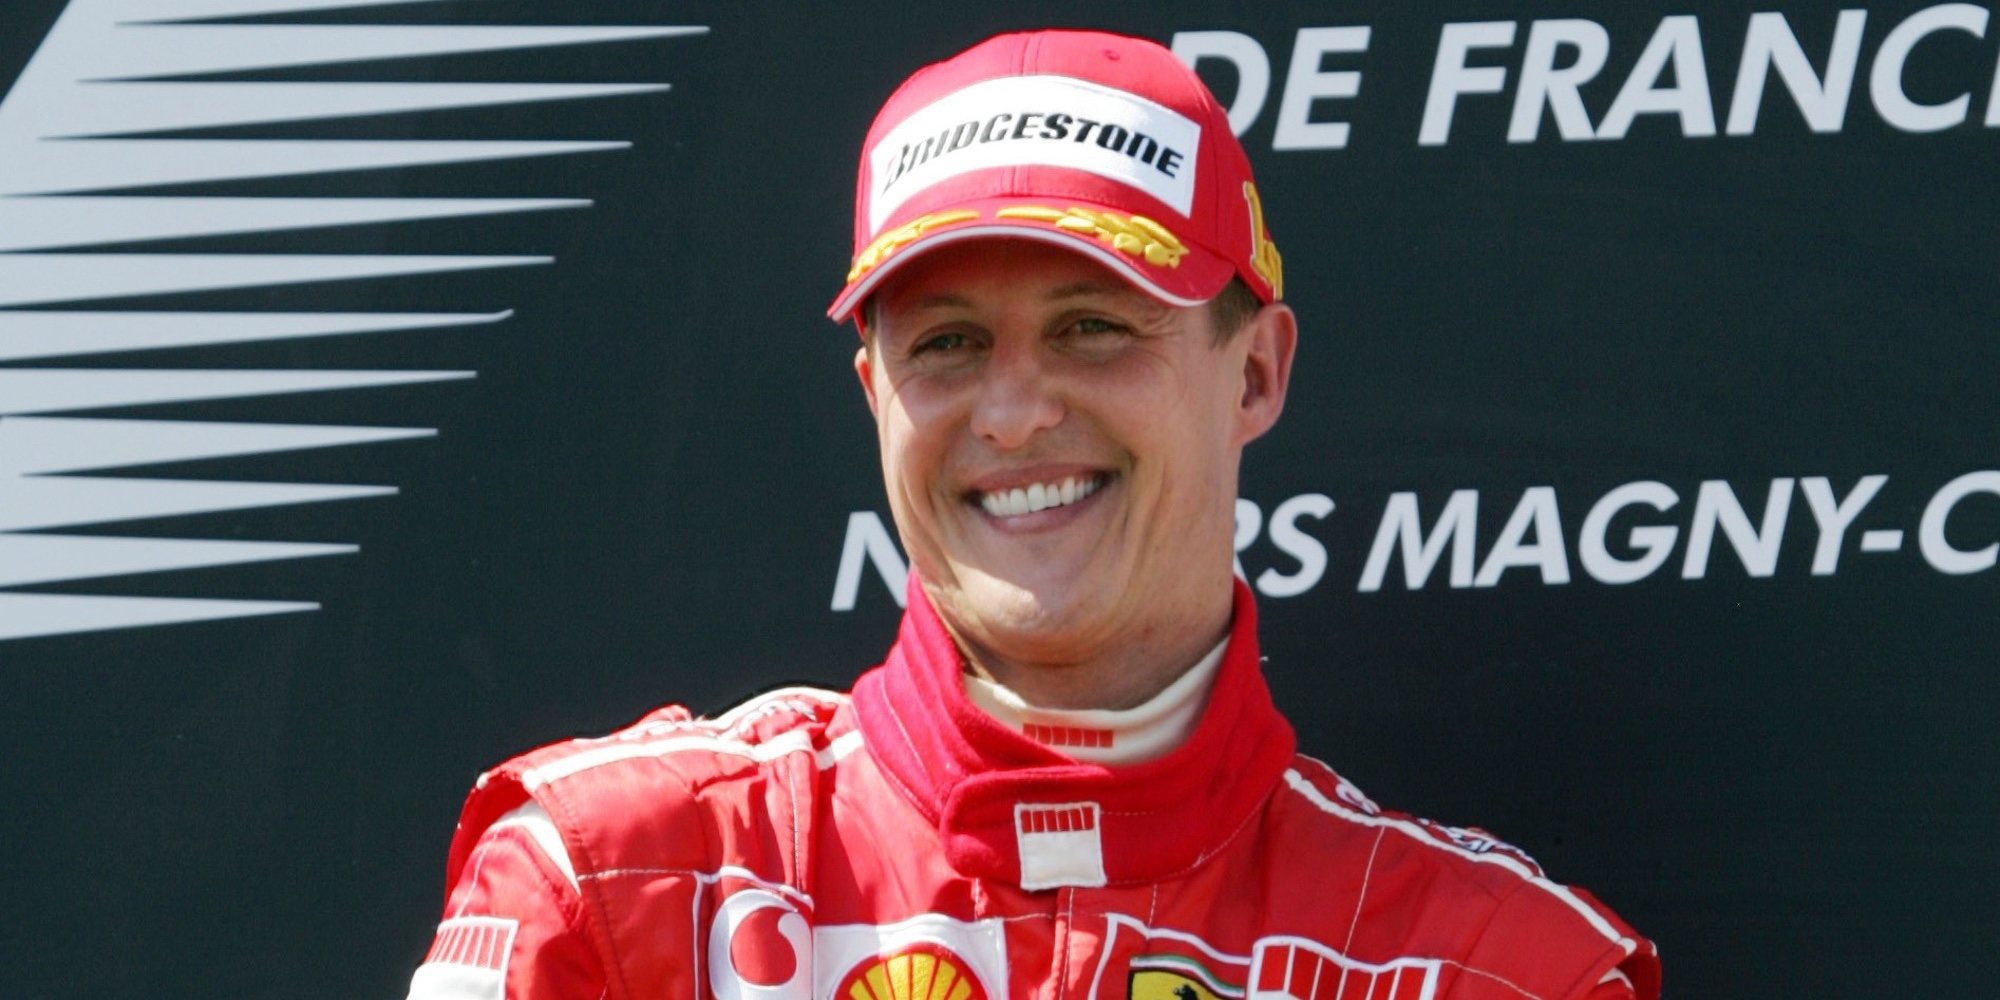 Michael Schumacher será trasladado a Mallorca para vivir en una lujosa mansión de 30 millones de euros